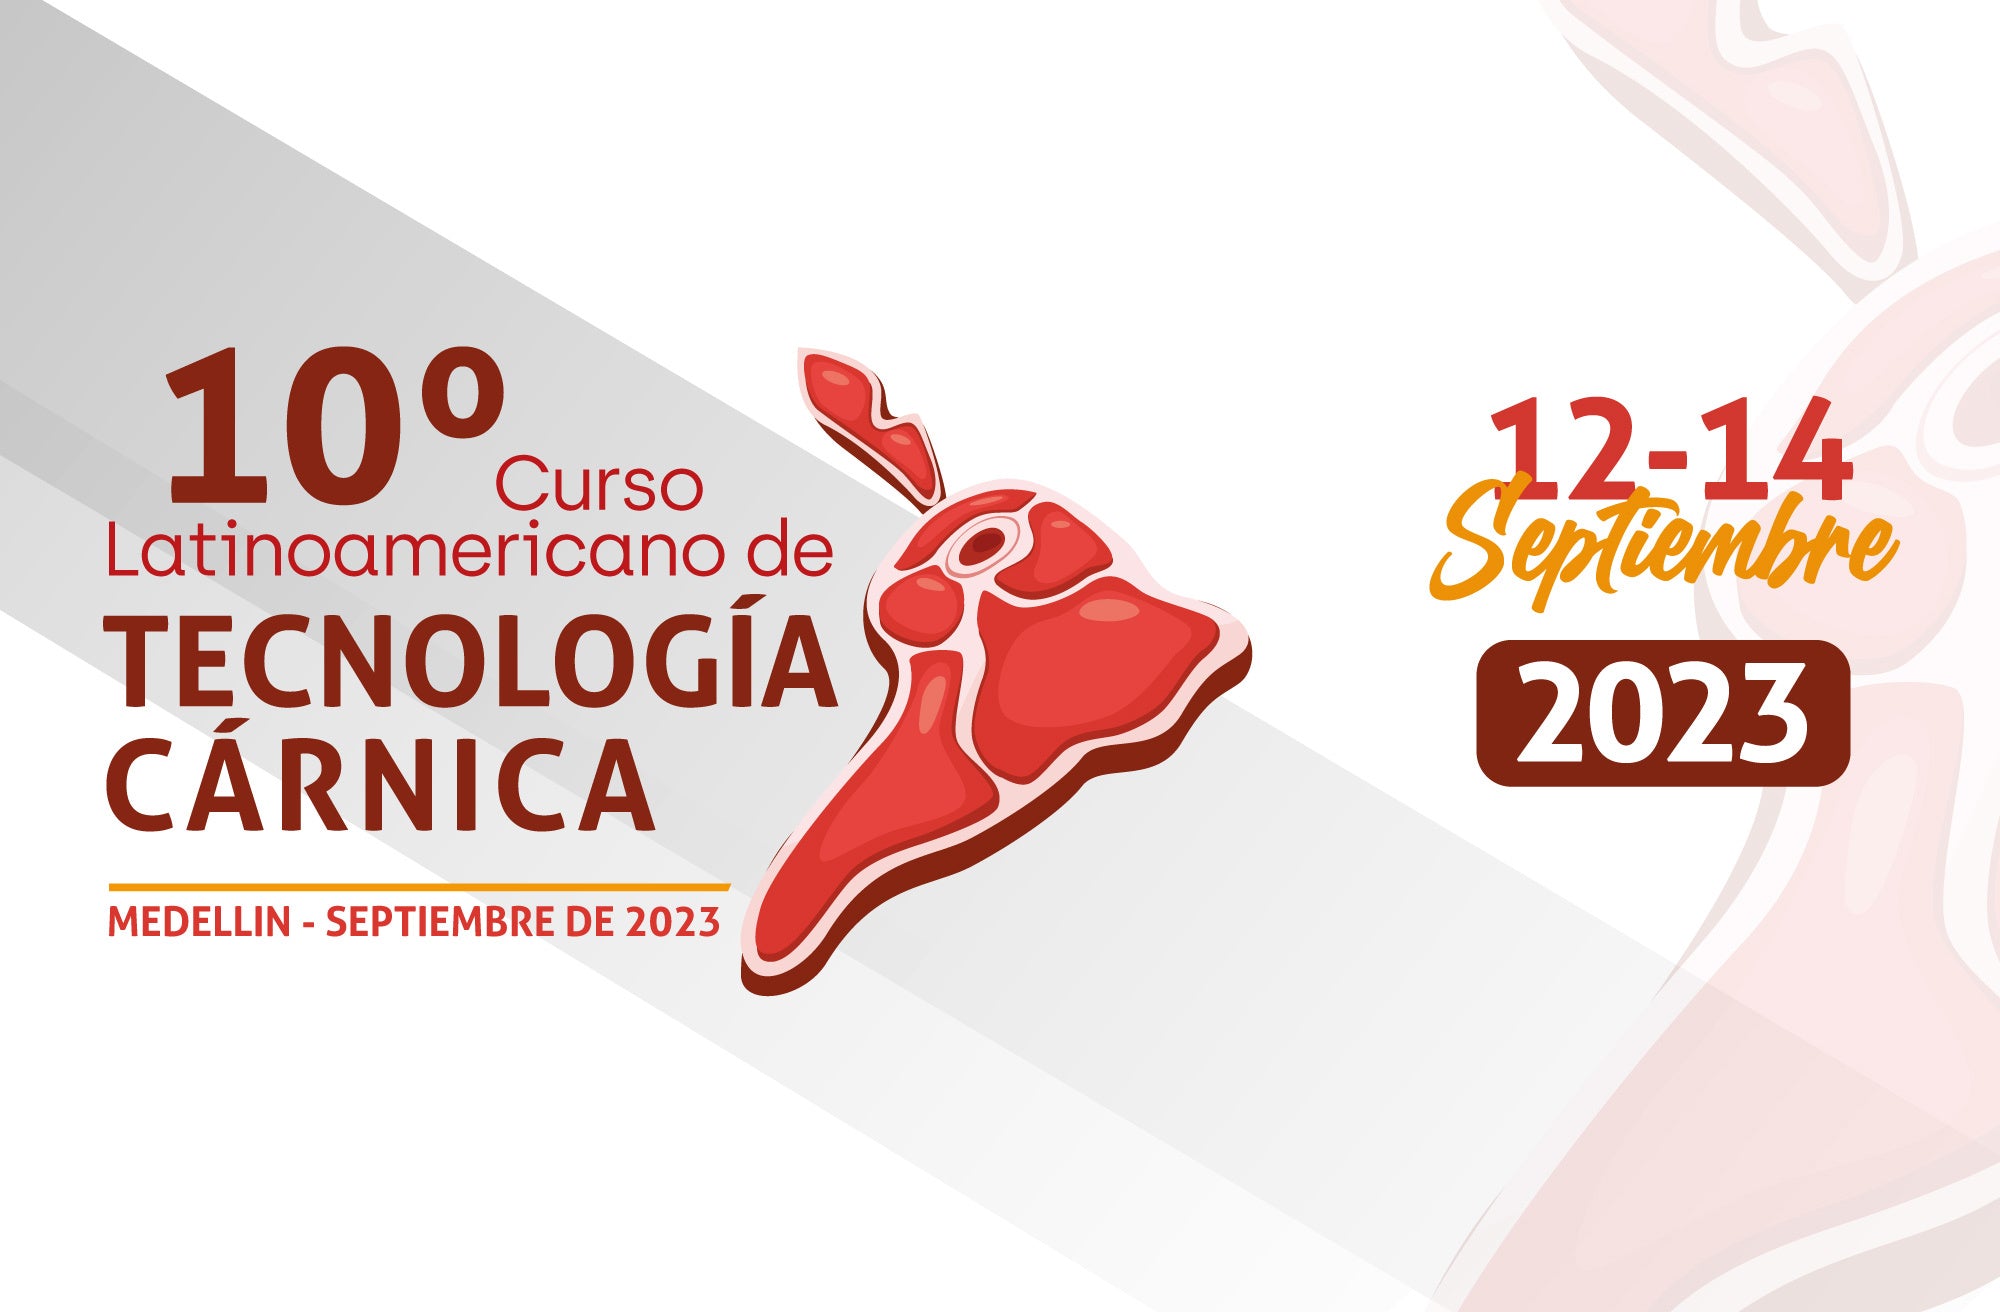 10° Curso Latinoamericano de Tecnología Cárnica